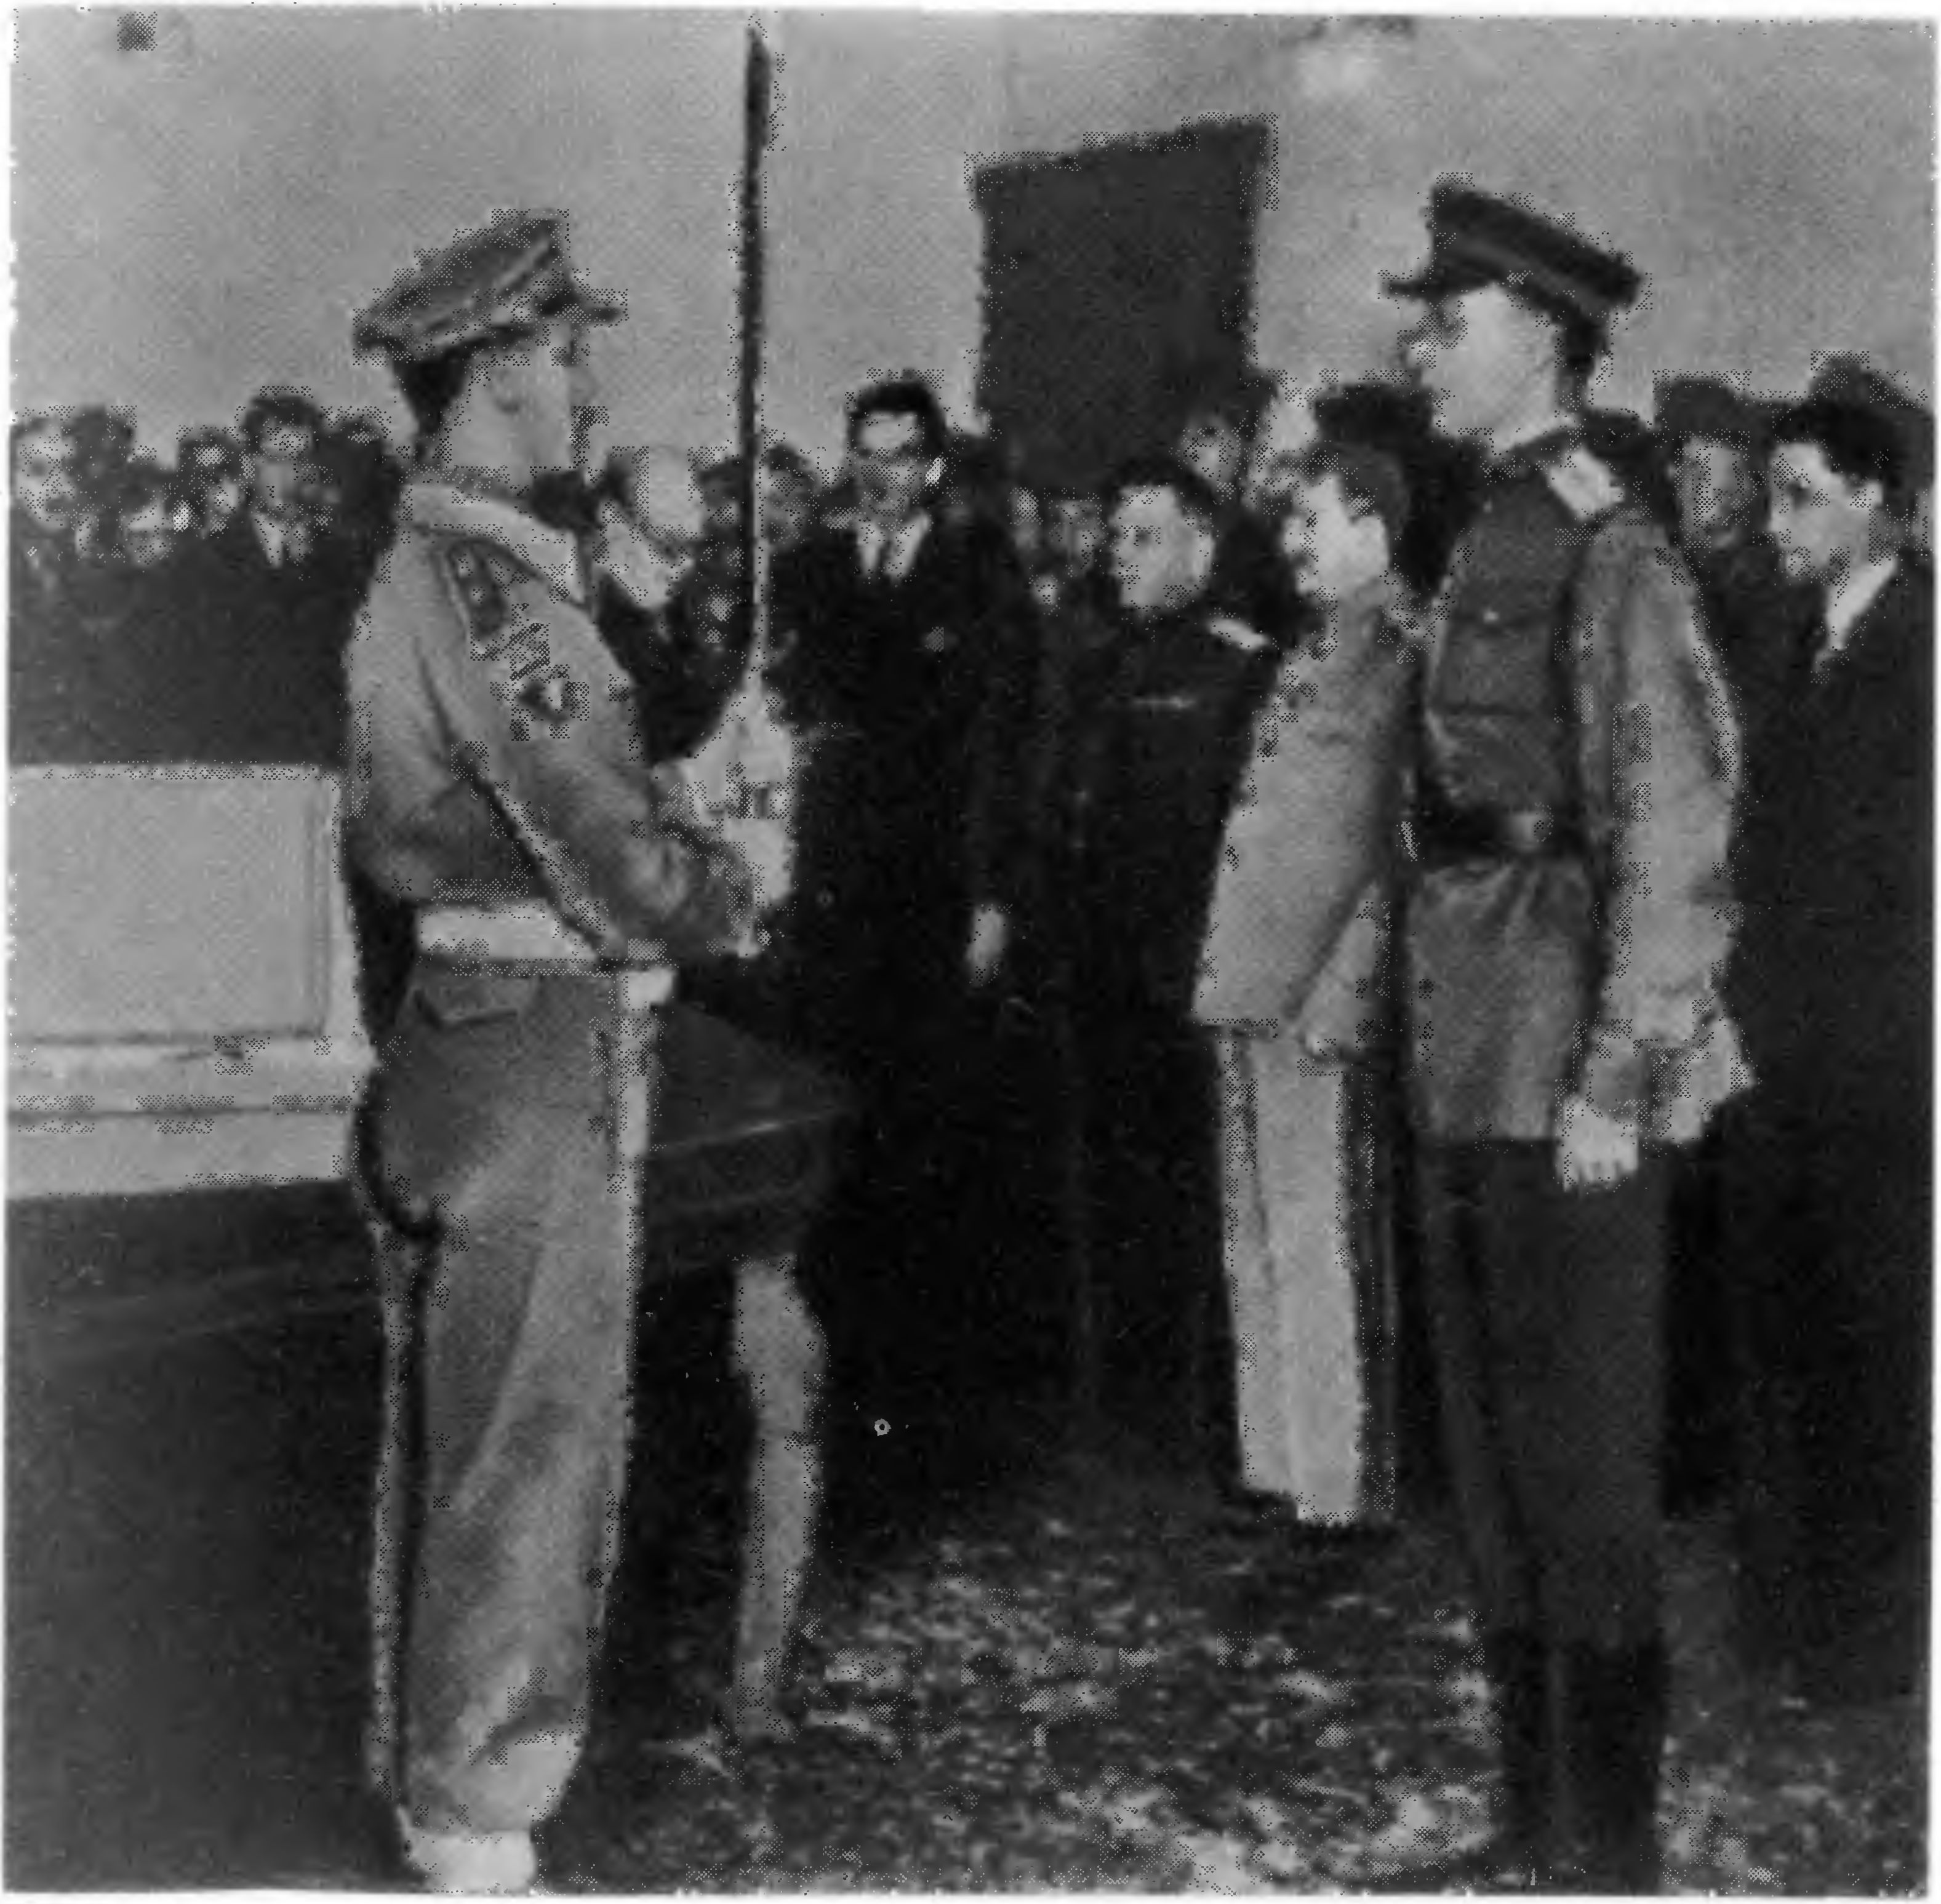 Церемония передачи почетного меча — дара короля Великобритании Георга VI гражданам Сталинграда в ознаменование героической обороны города. Тегеран, 29 ноября 1943 г.